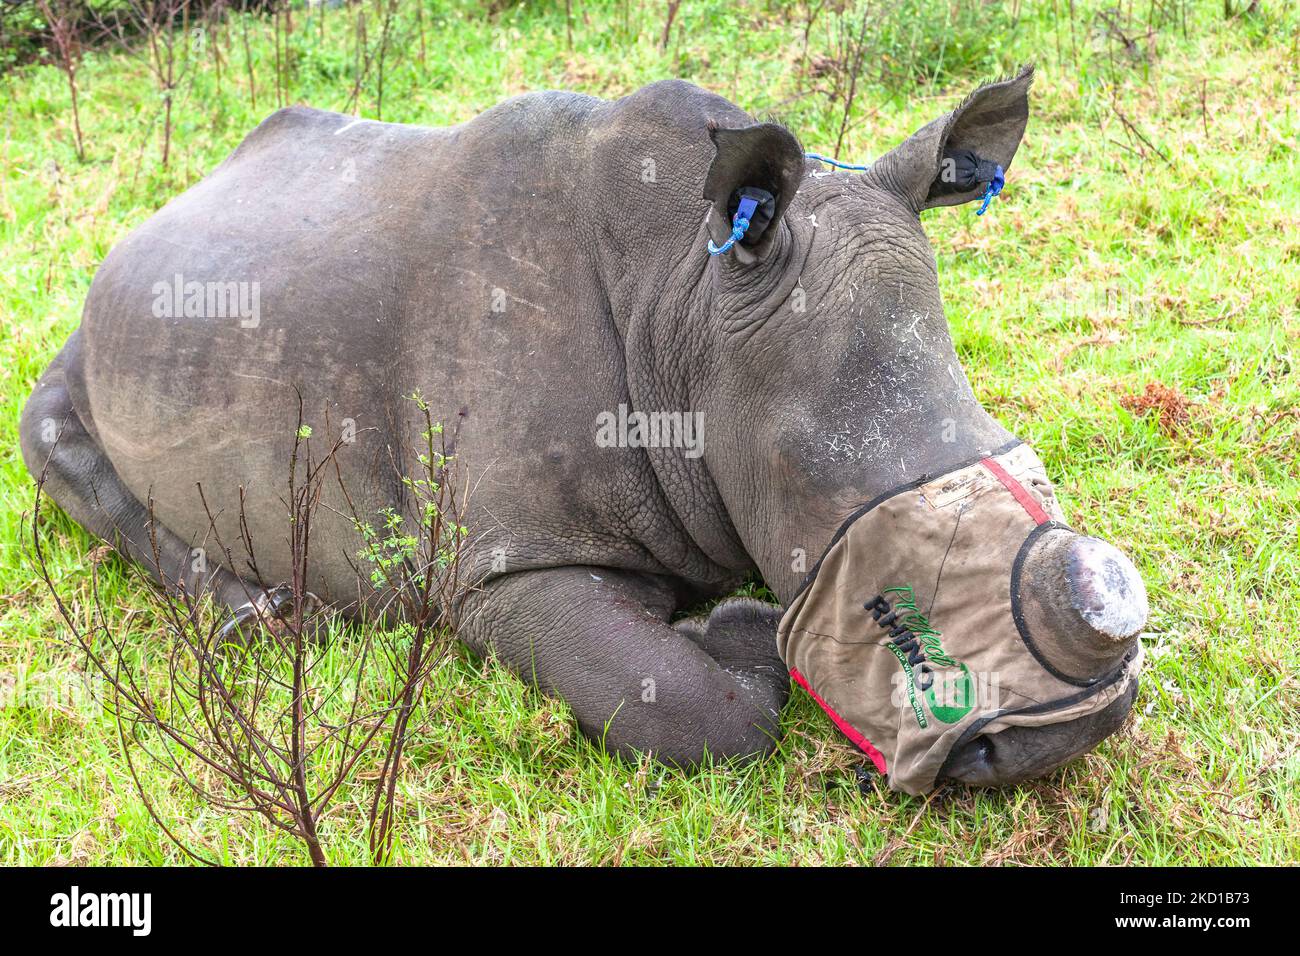 Rhino anaimal verspottet und Vet-Team entfernen die Wildtiere Horn, um sein Leben vor Wilderern zu retten, die die bedrohten Arten töten, die ein Erbe t ist Stockfoto